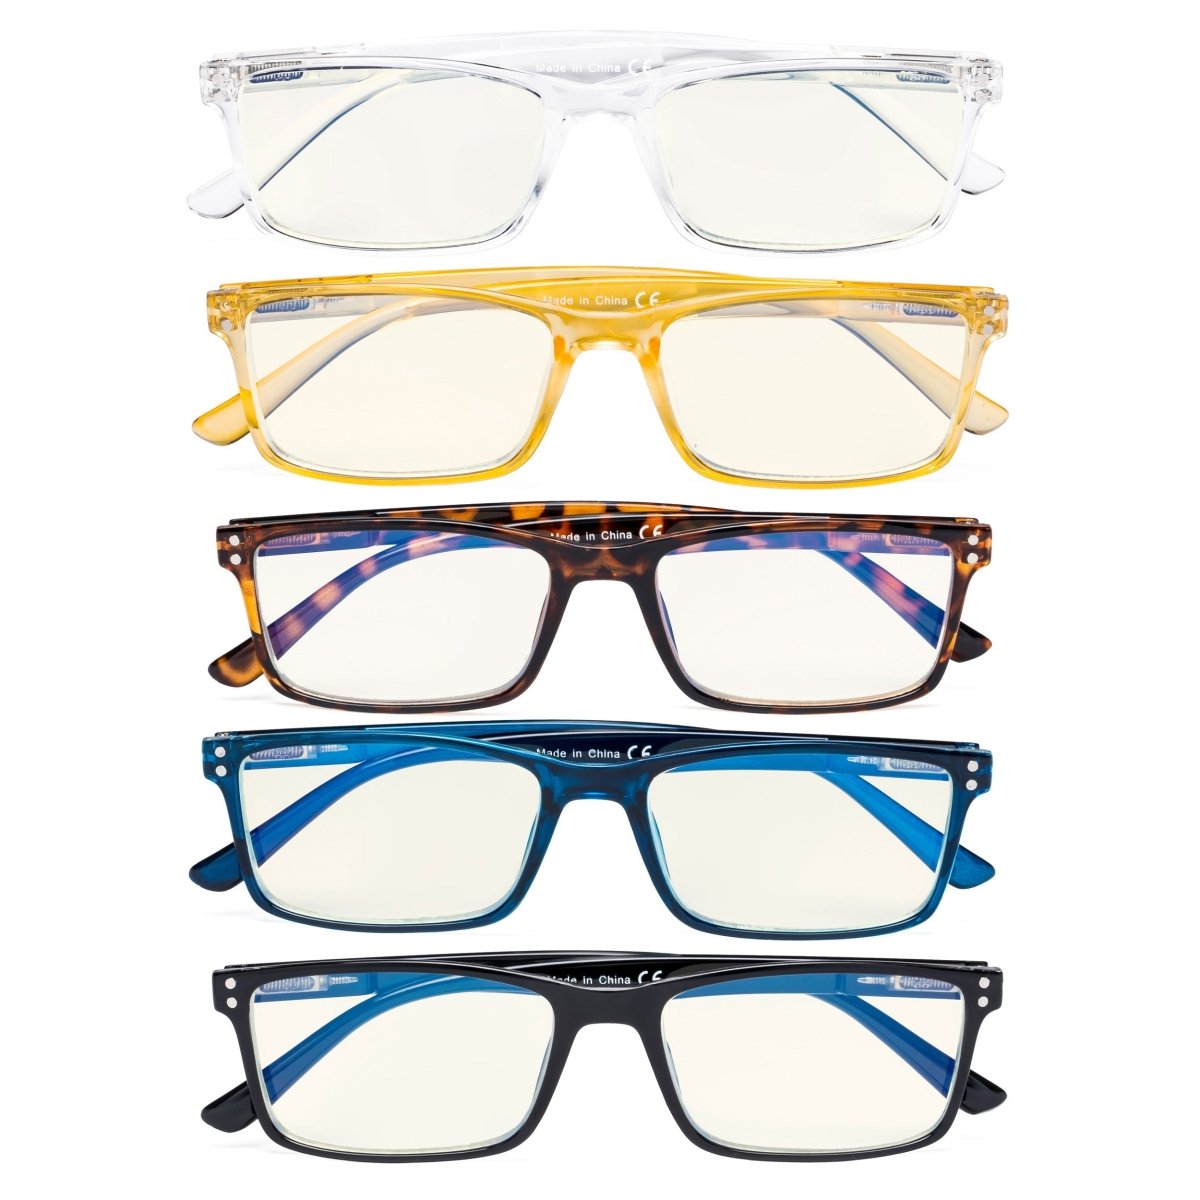 5 Pack Stylish Blue Light Filter Reading Glasses UVR802eyekeeper.com